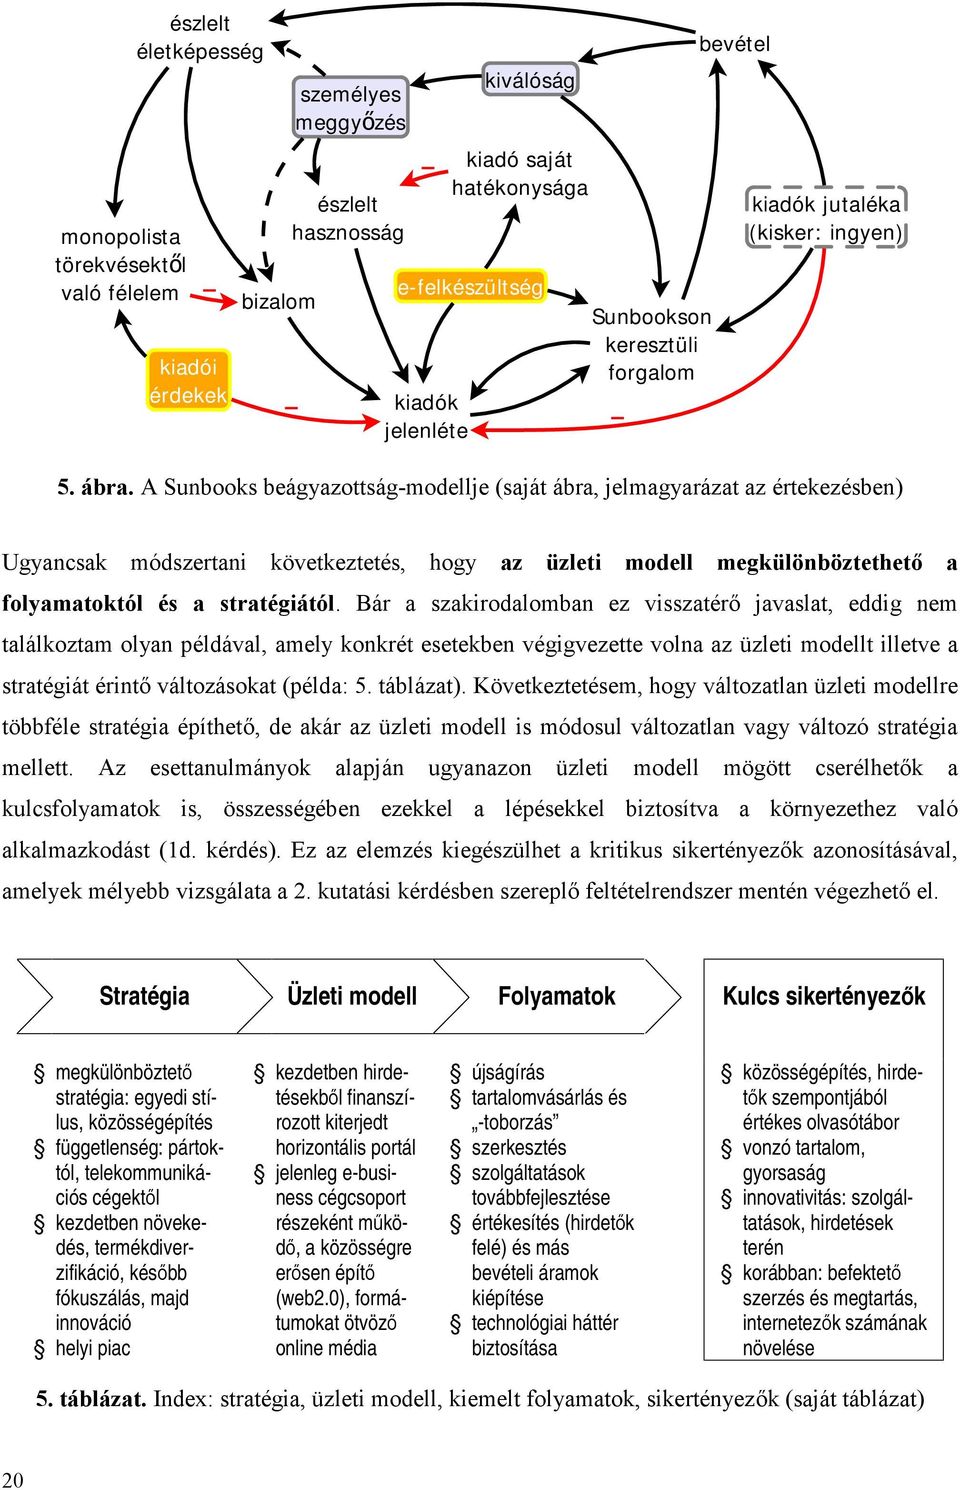 A Sunbooks beágyazottság-modellje (saját ábra, jelmagyarázat az értekezésben) Ugyancsak módszertani következtetés, hogy az üzleti modell megkülönböztethető a folyamatoktól és a stratégiától.